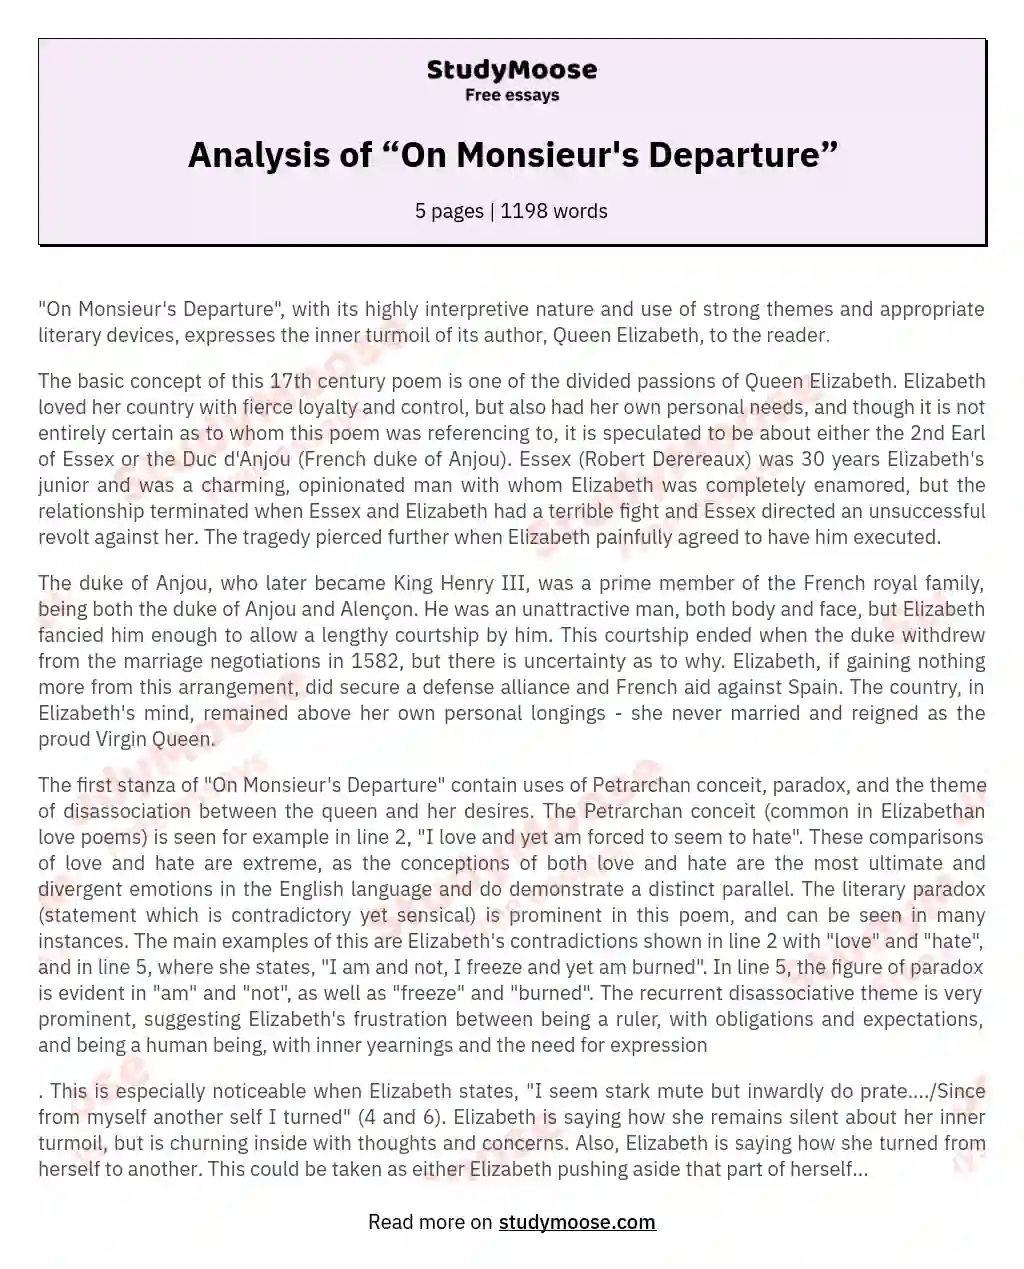 Analysis of “On Monsieur's Departure” essay